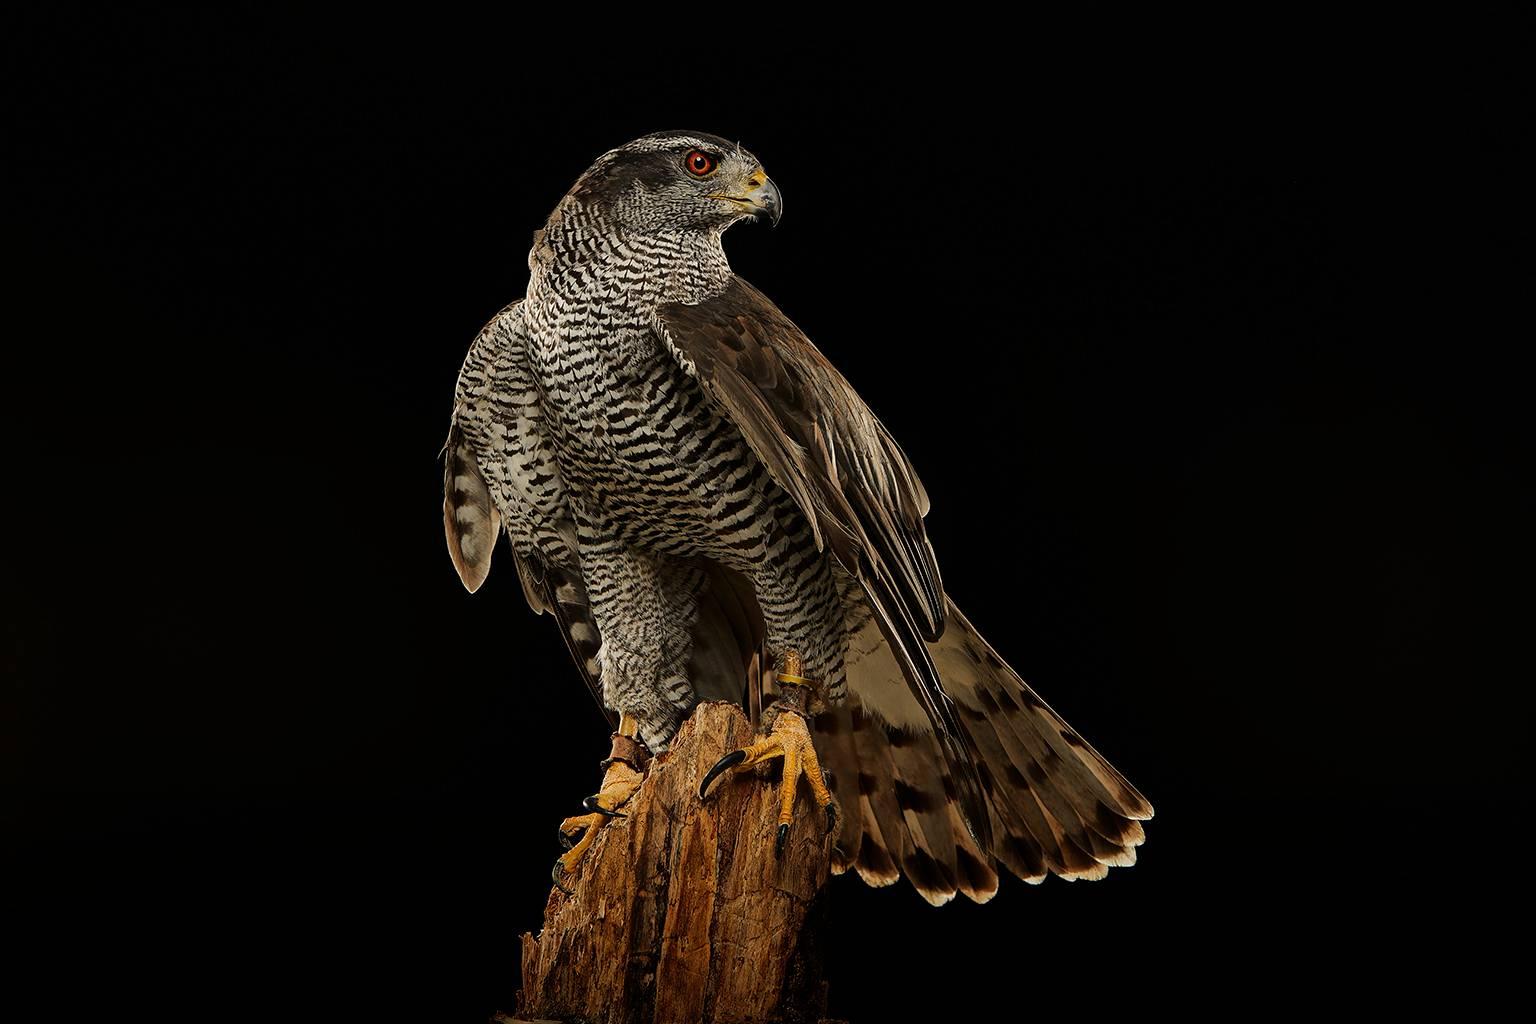 Chris Gordaneer Color Photograph - Birds of Prey Northern Goshawk No. 1